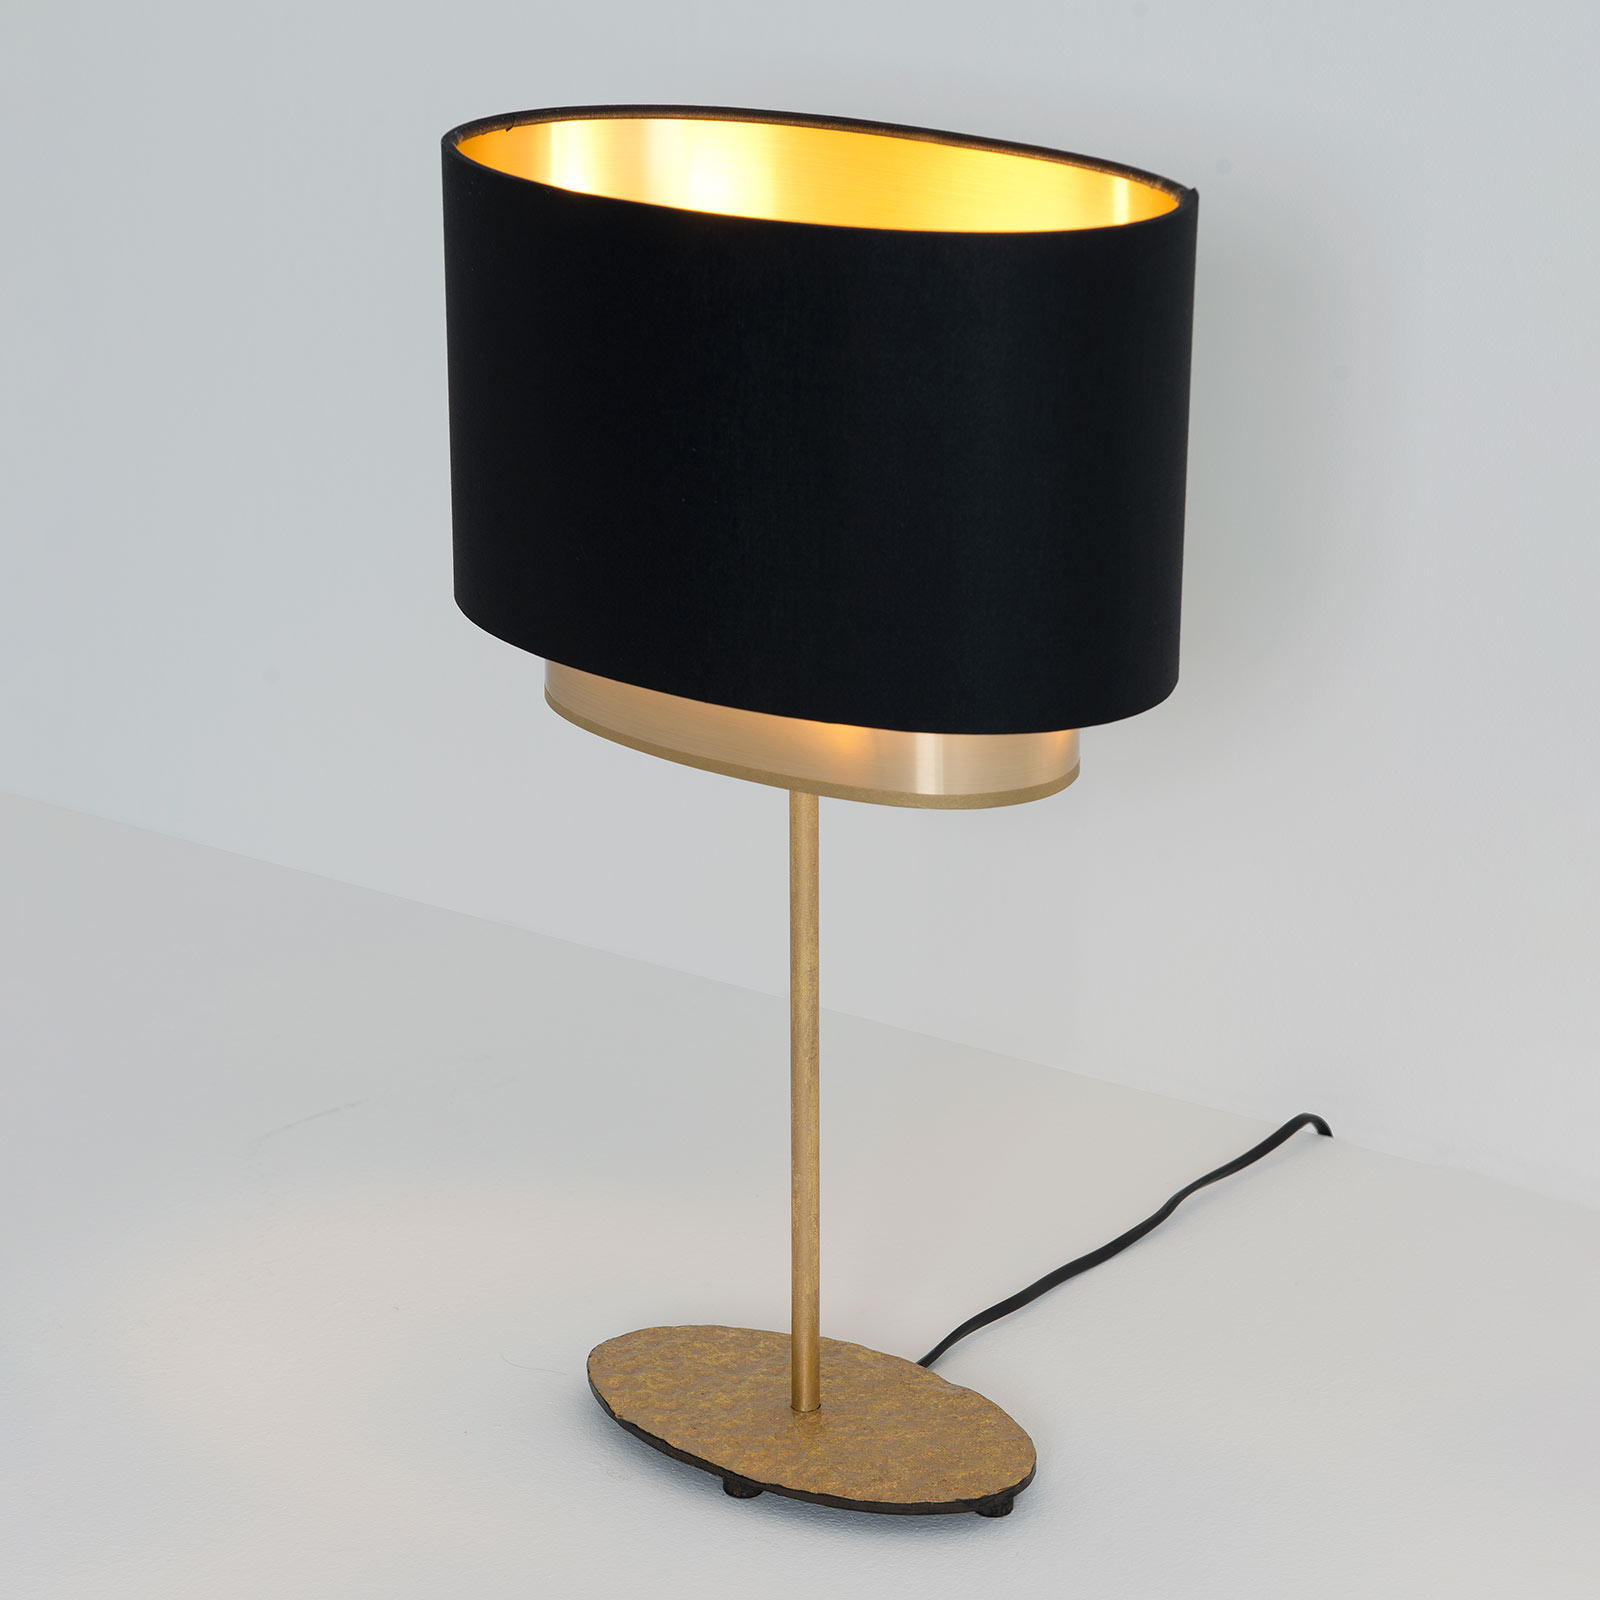 Tafellamp Mattia, ovaal, dubbel, zwart/goud